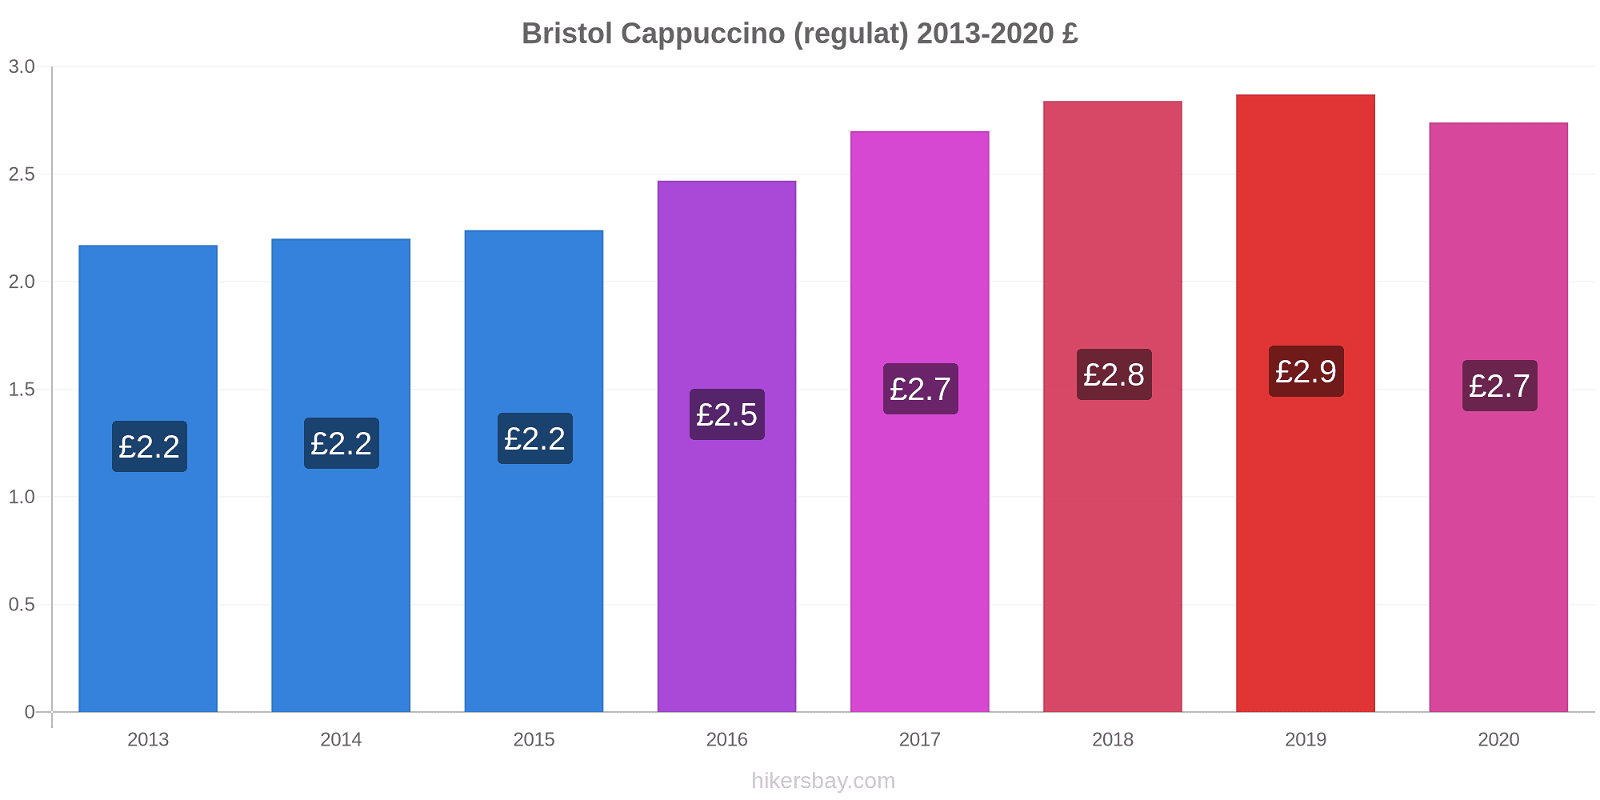 Bristol modificări de preț Cappuccino (regulat) hikersbay.com